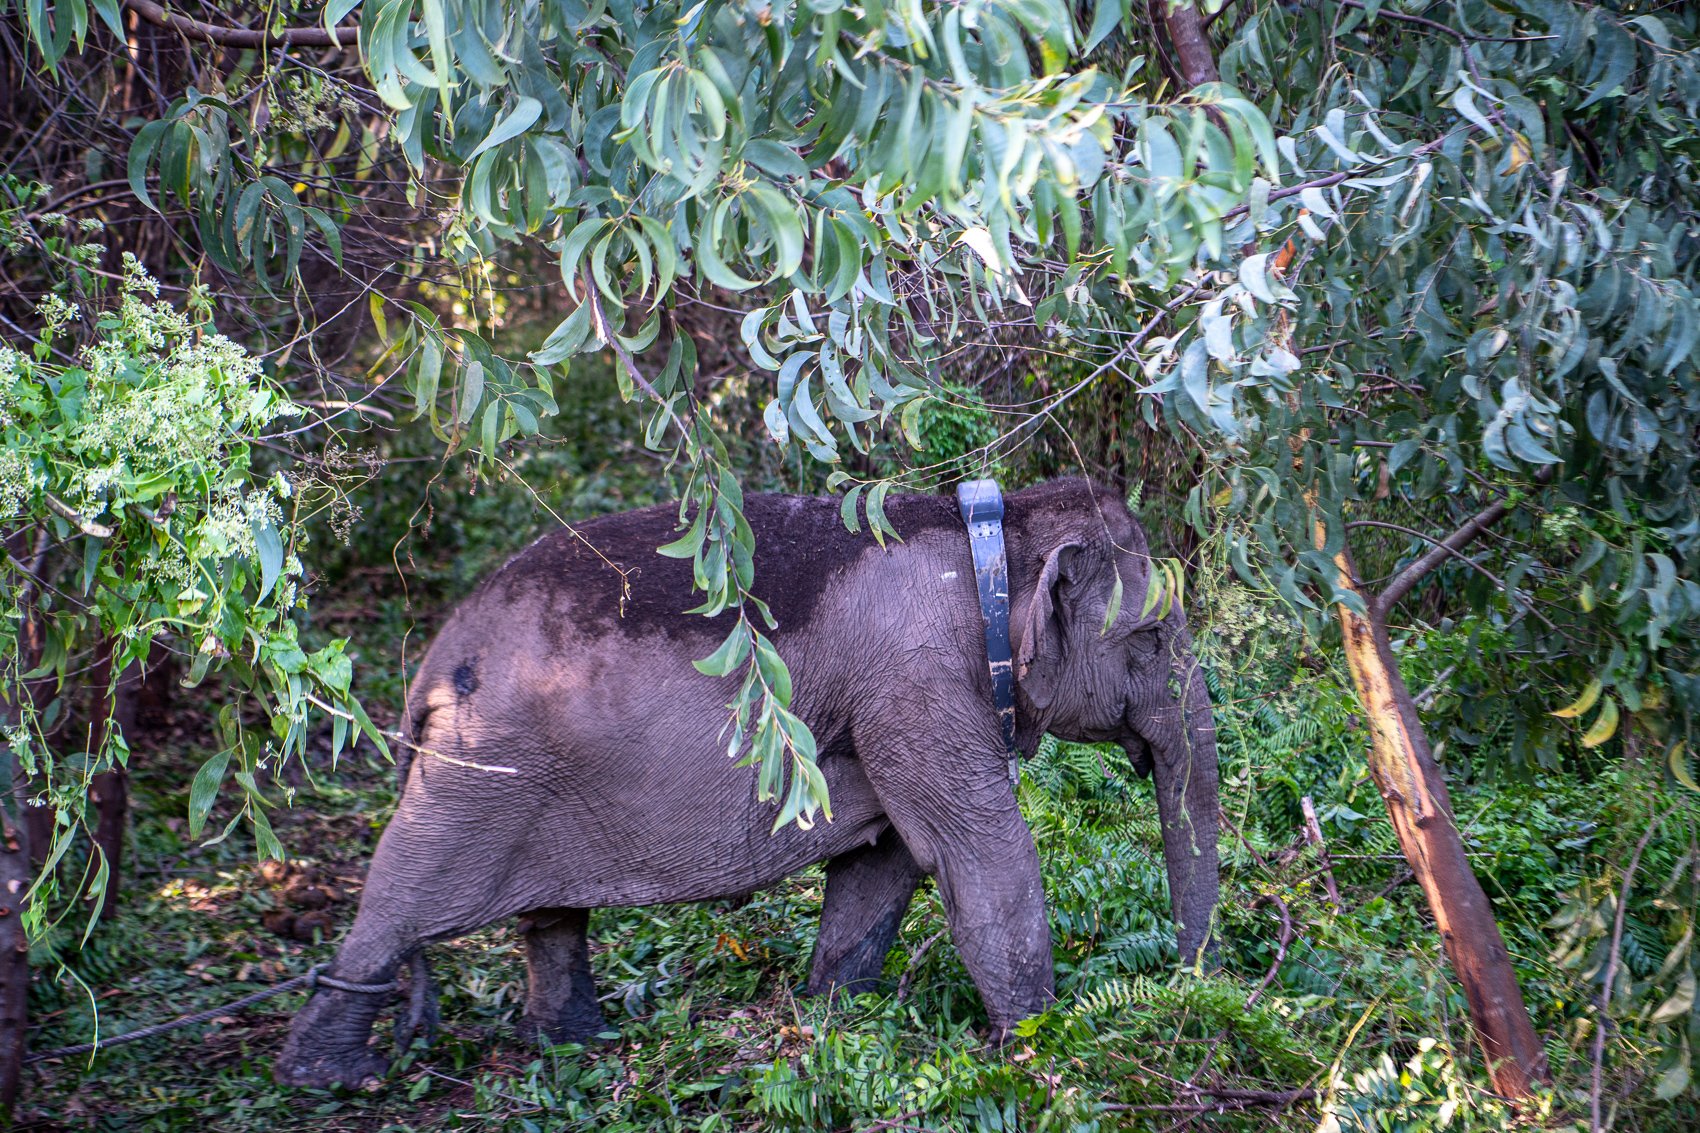 Seekor gajah sumatera (Elephas Maximus Sumatranus) liar bernama Meilaini yang berjenis kelamin betina terlihat berjalan menggunakan kalung GPS (GPS Collar) yang terpasang di lehernya.